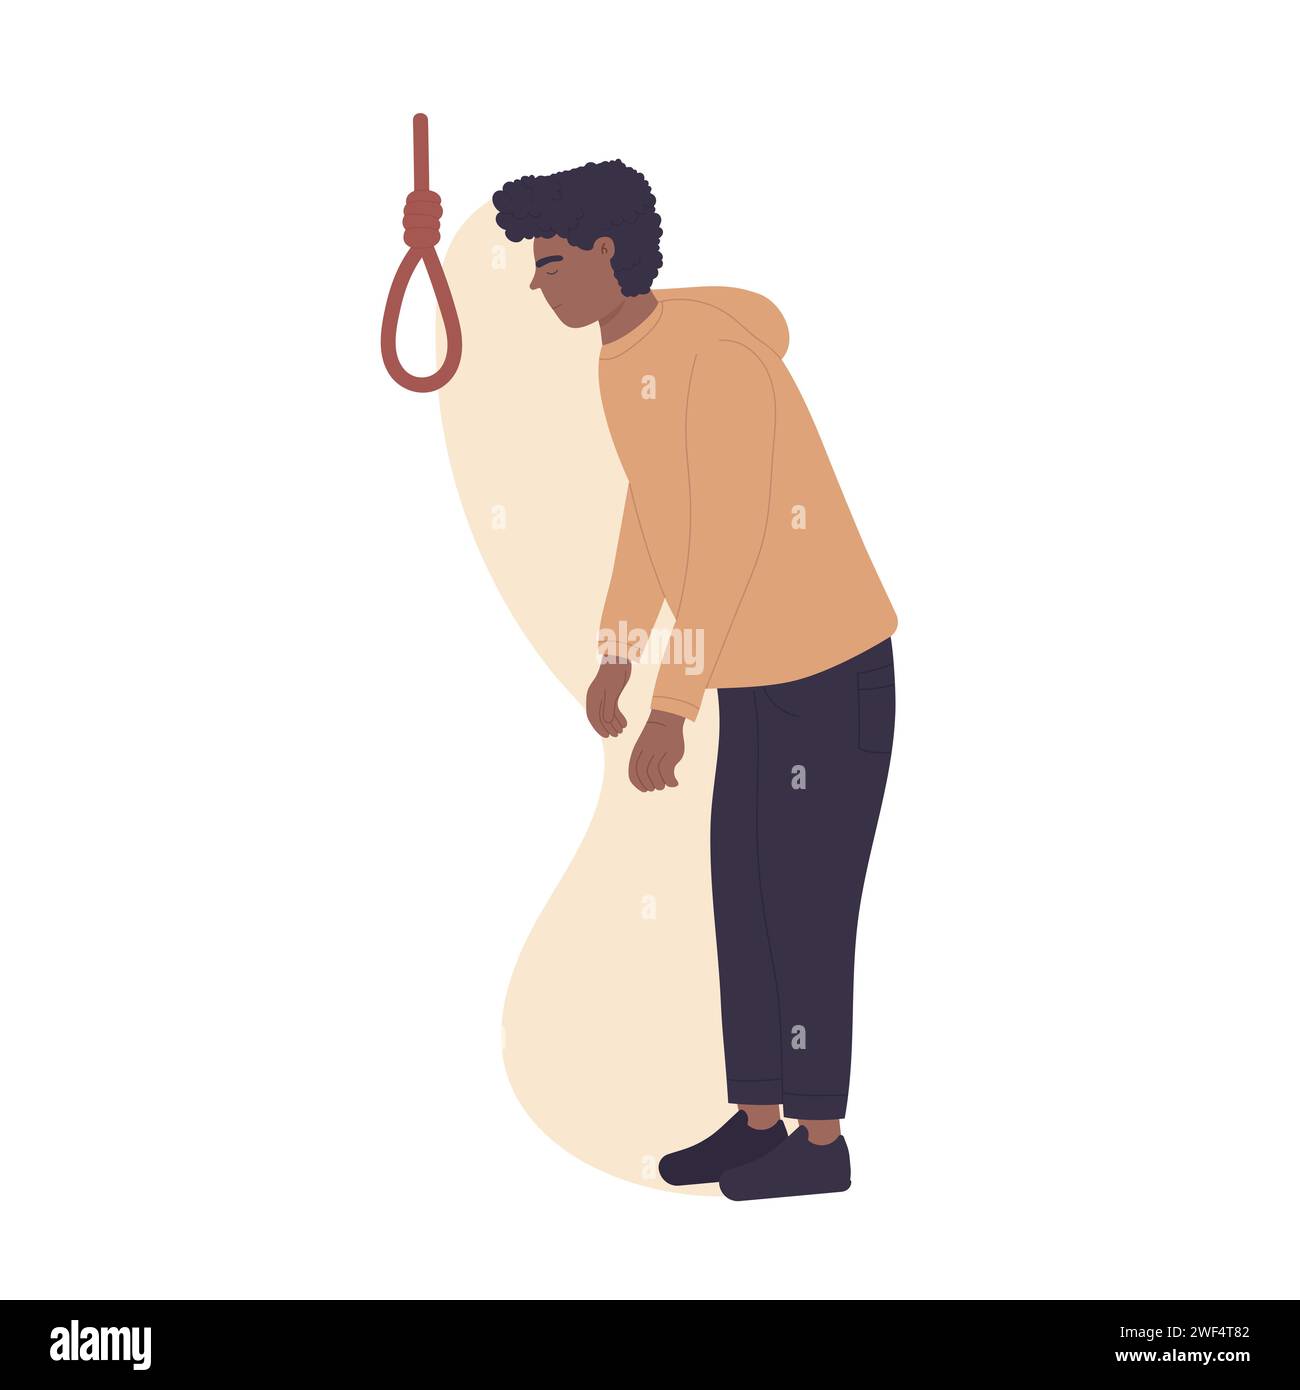 Depression und Suizidgedanken. Psychische Probleme, Selbstmordversuche Comic-Vektor-Illustration Stock Vektor